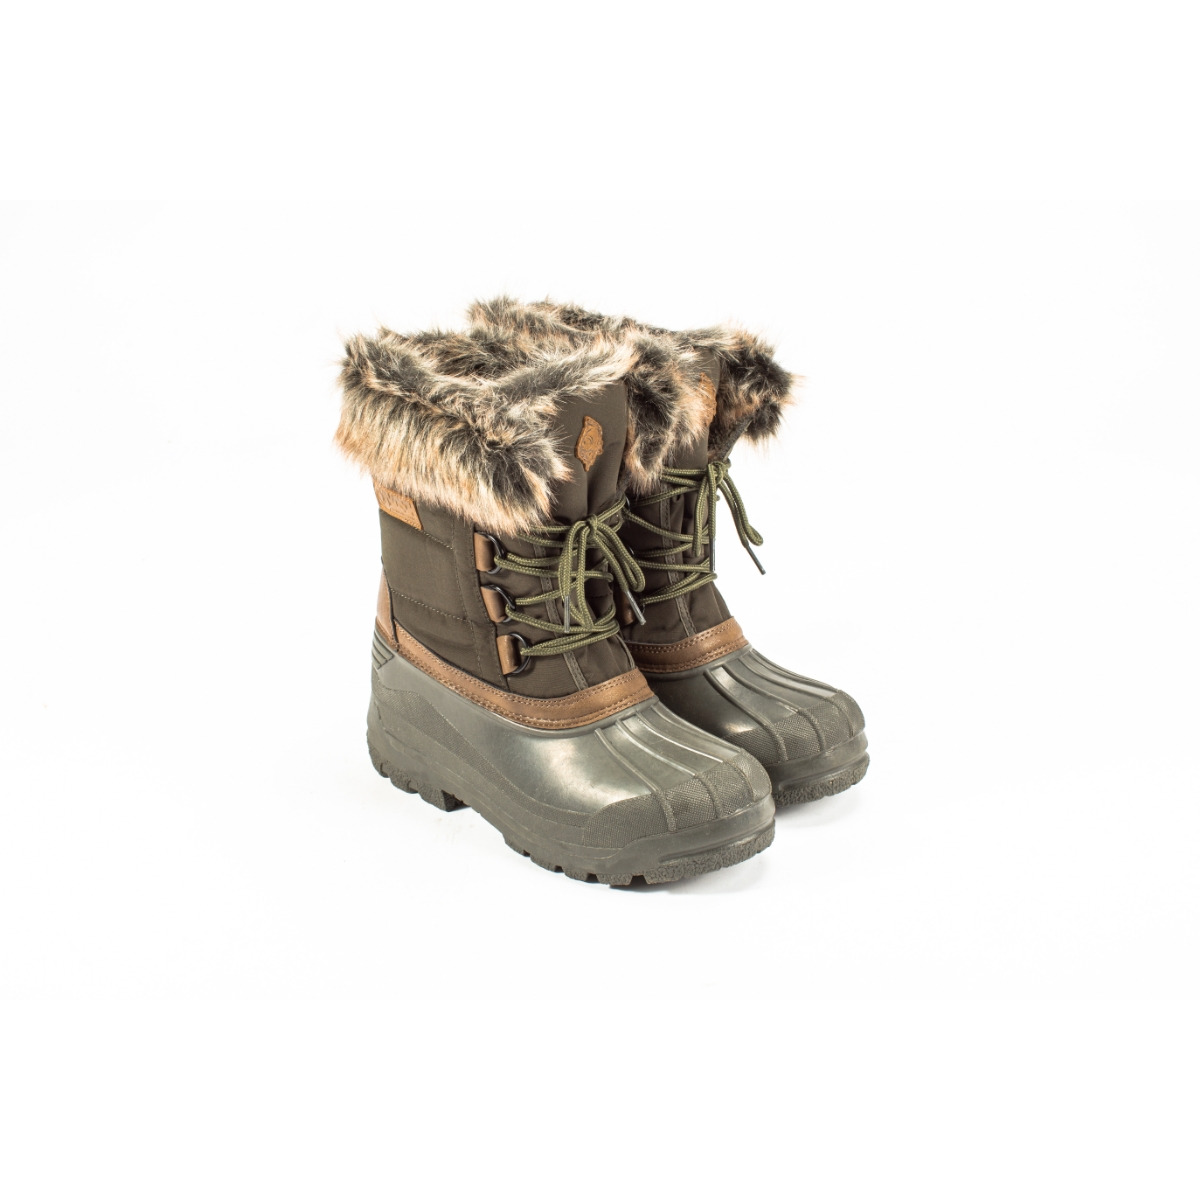 Nash Zt Polar Boots - Size 8